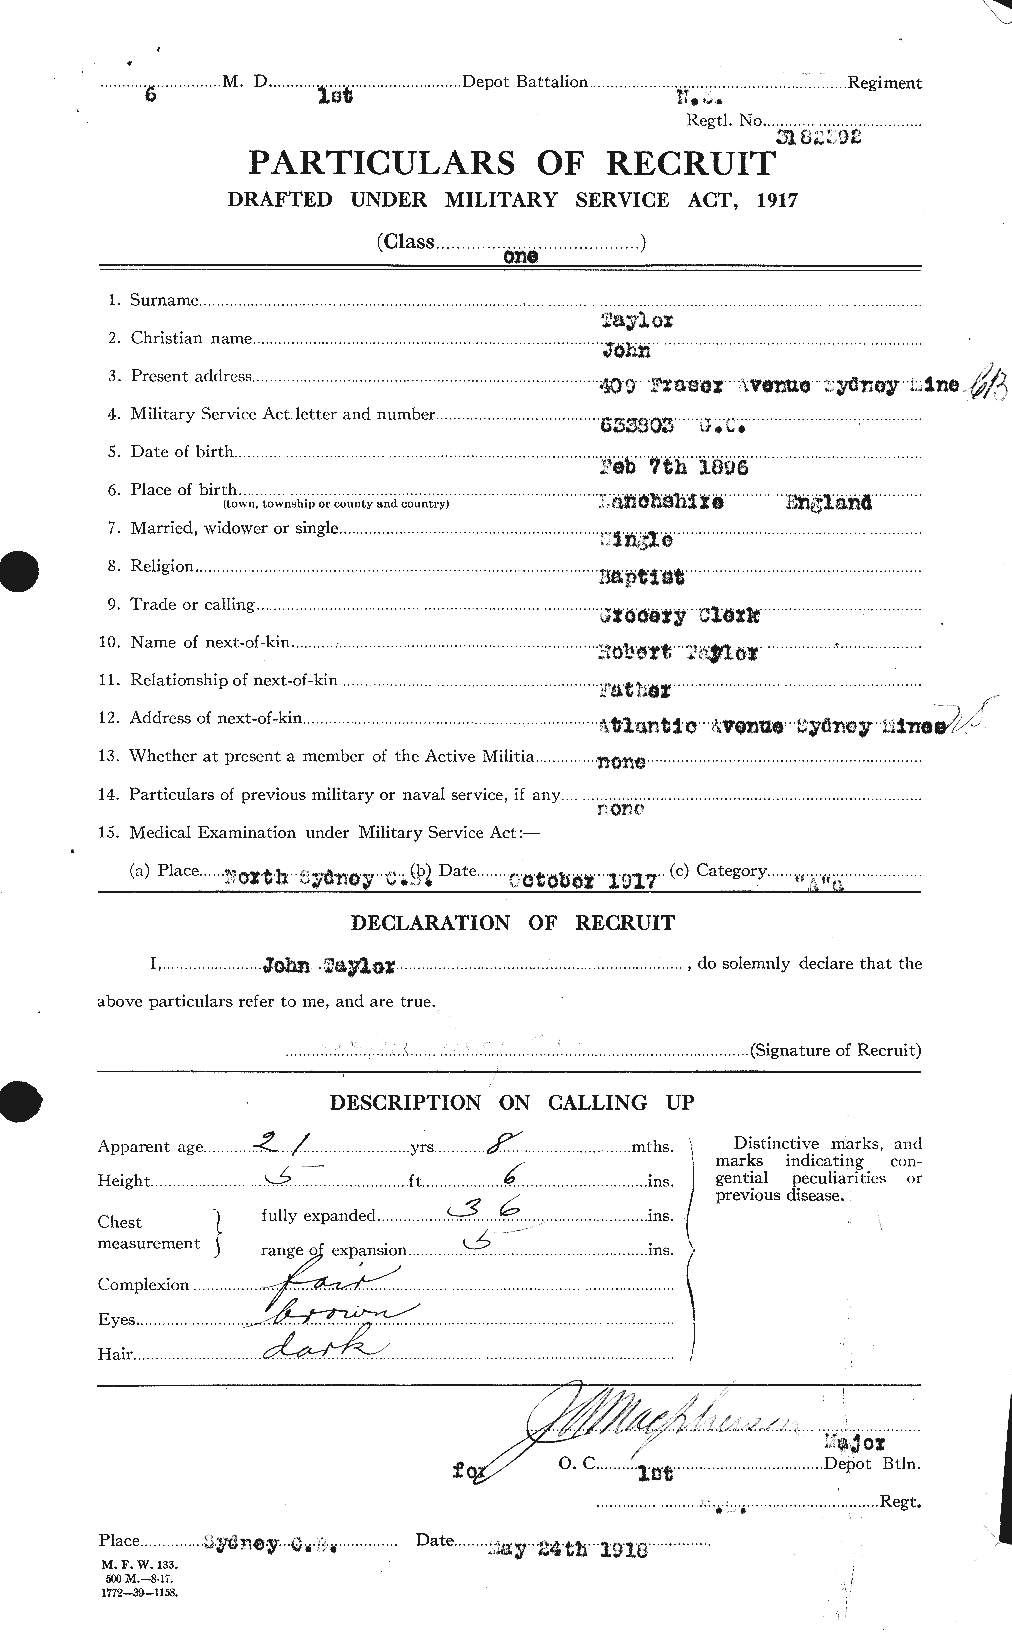 Dossiers du Personnel de la Première Guerre mondiale - CEC 626998a